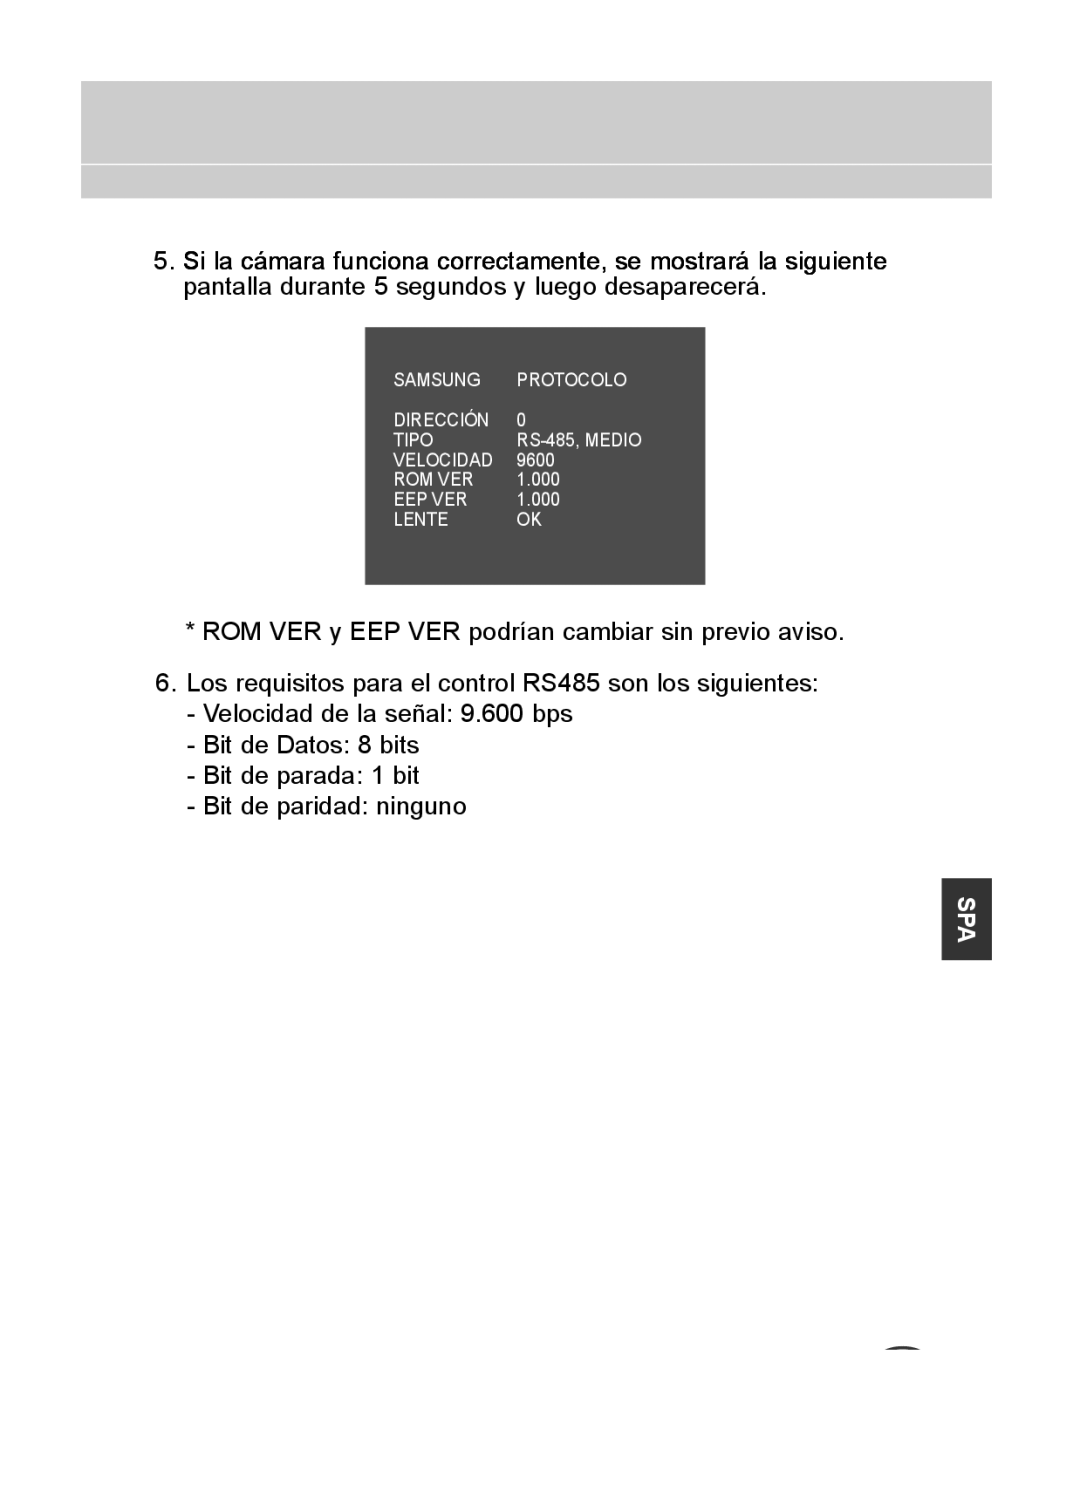 Samsung C4333(P), C4335(P), C4235(P) user manual Samsung Protocolo Dirección Tipo 